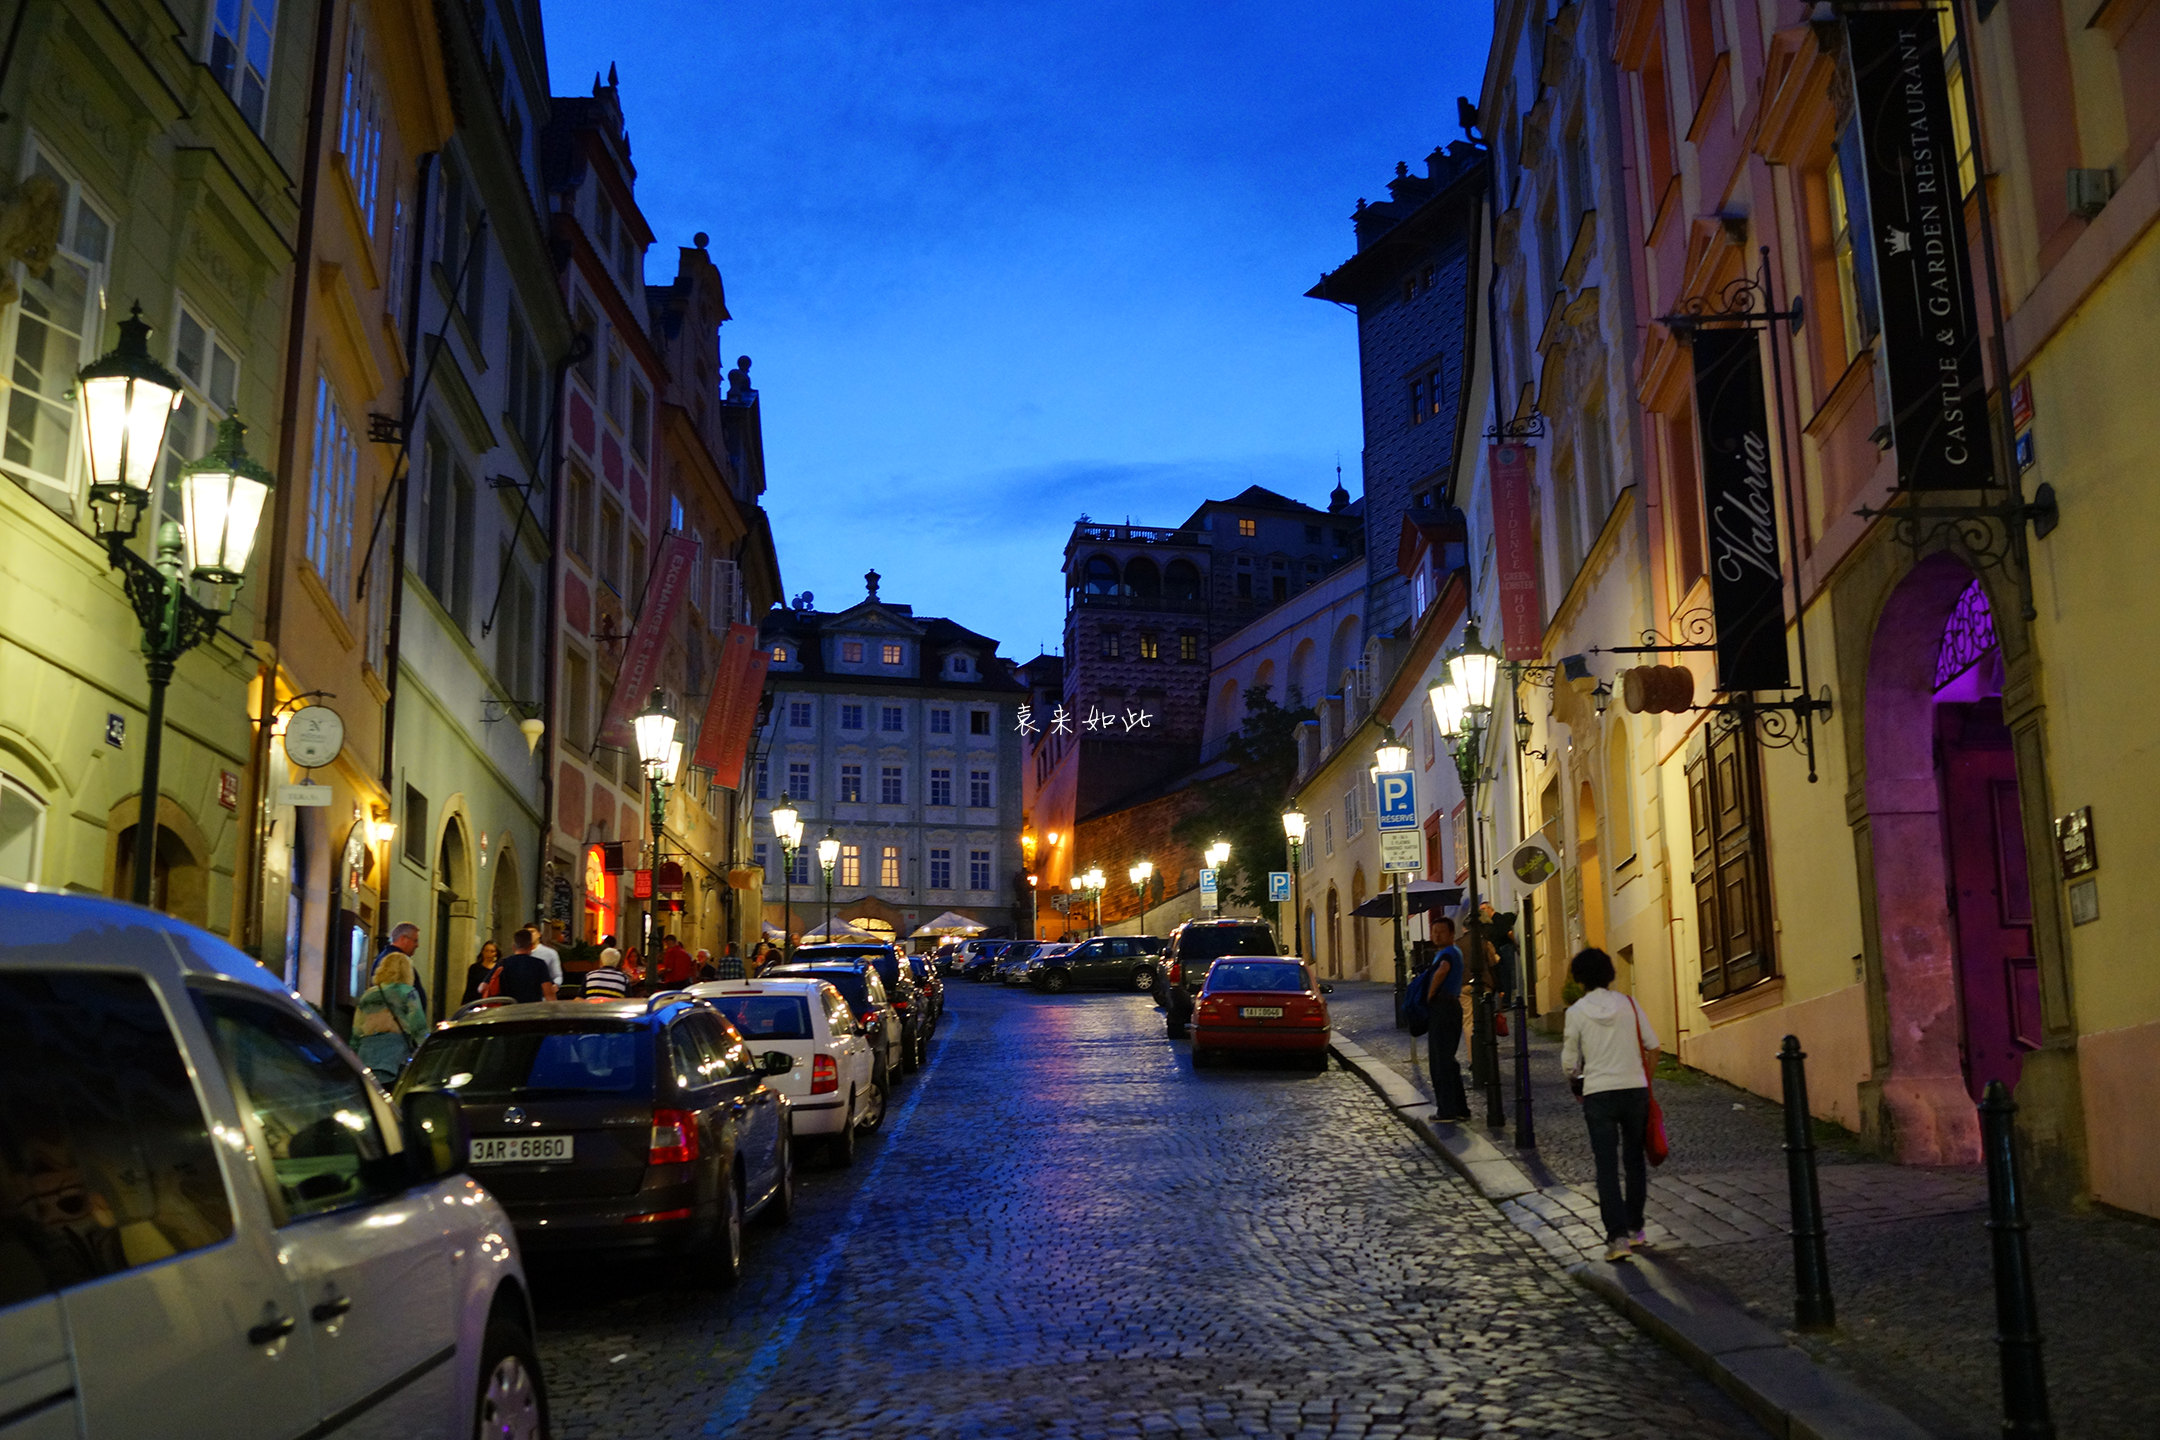 意境!无需解释,此刻的街道,展现出夜之魅力. 布拉格城堡